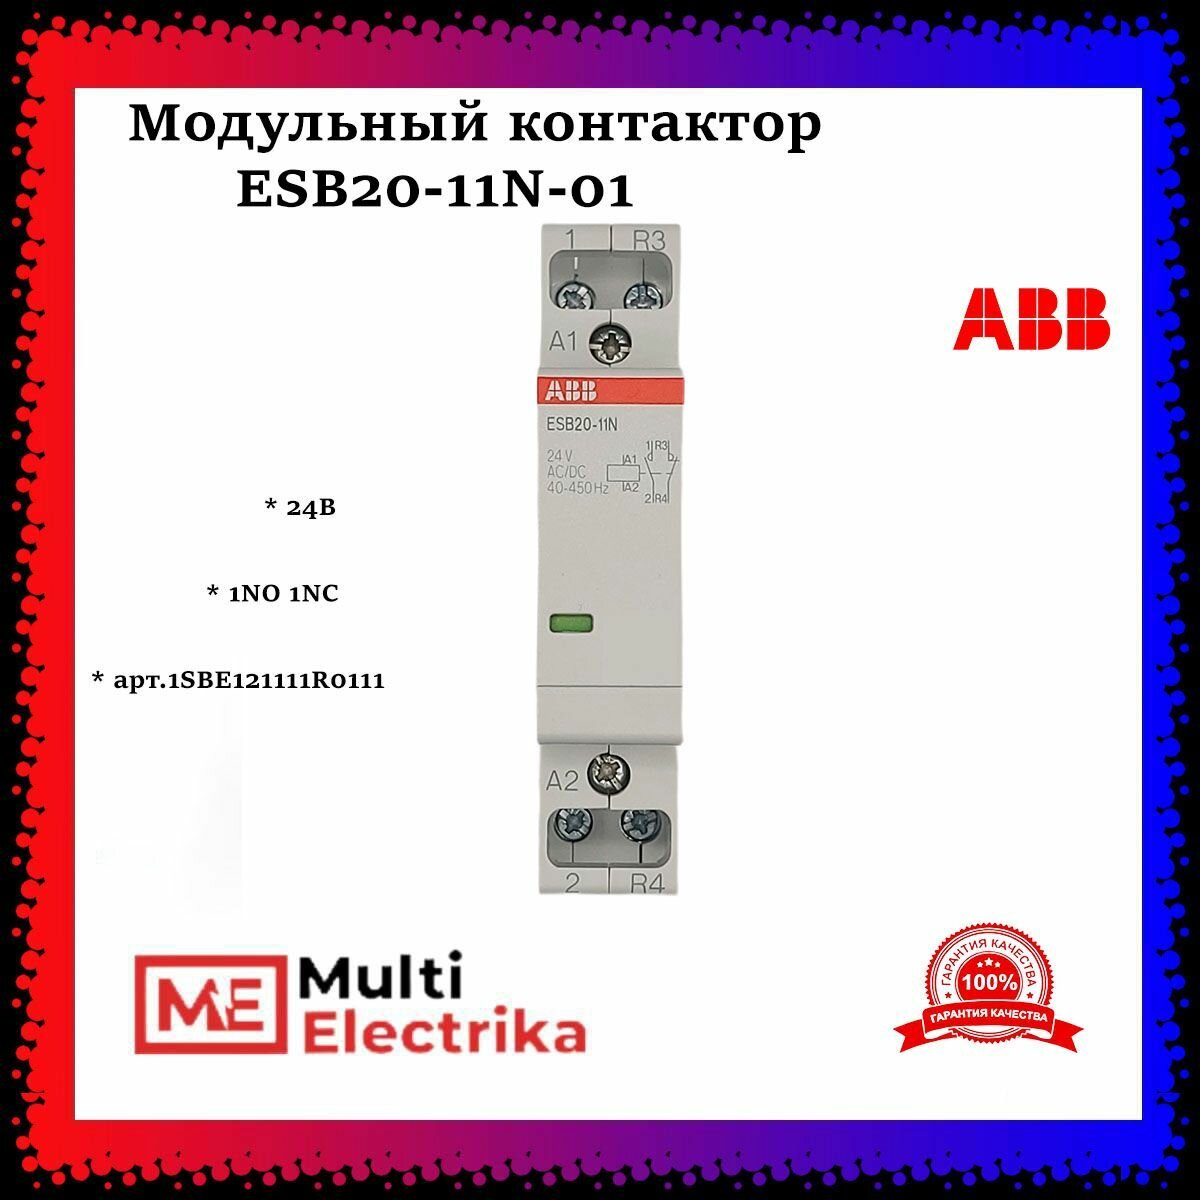 Модульный контактор ESB20-11N-01 (1НО 1 NC) 24B ABB 1SBE121111R0111